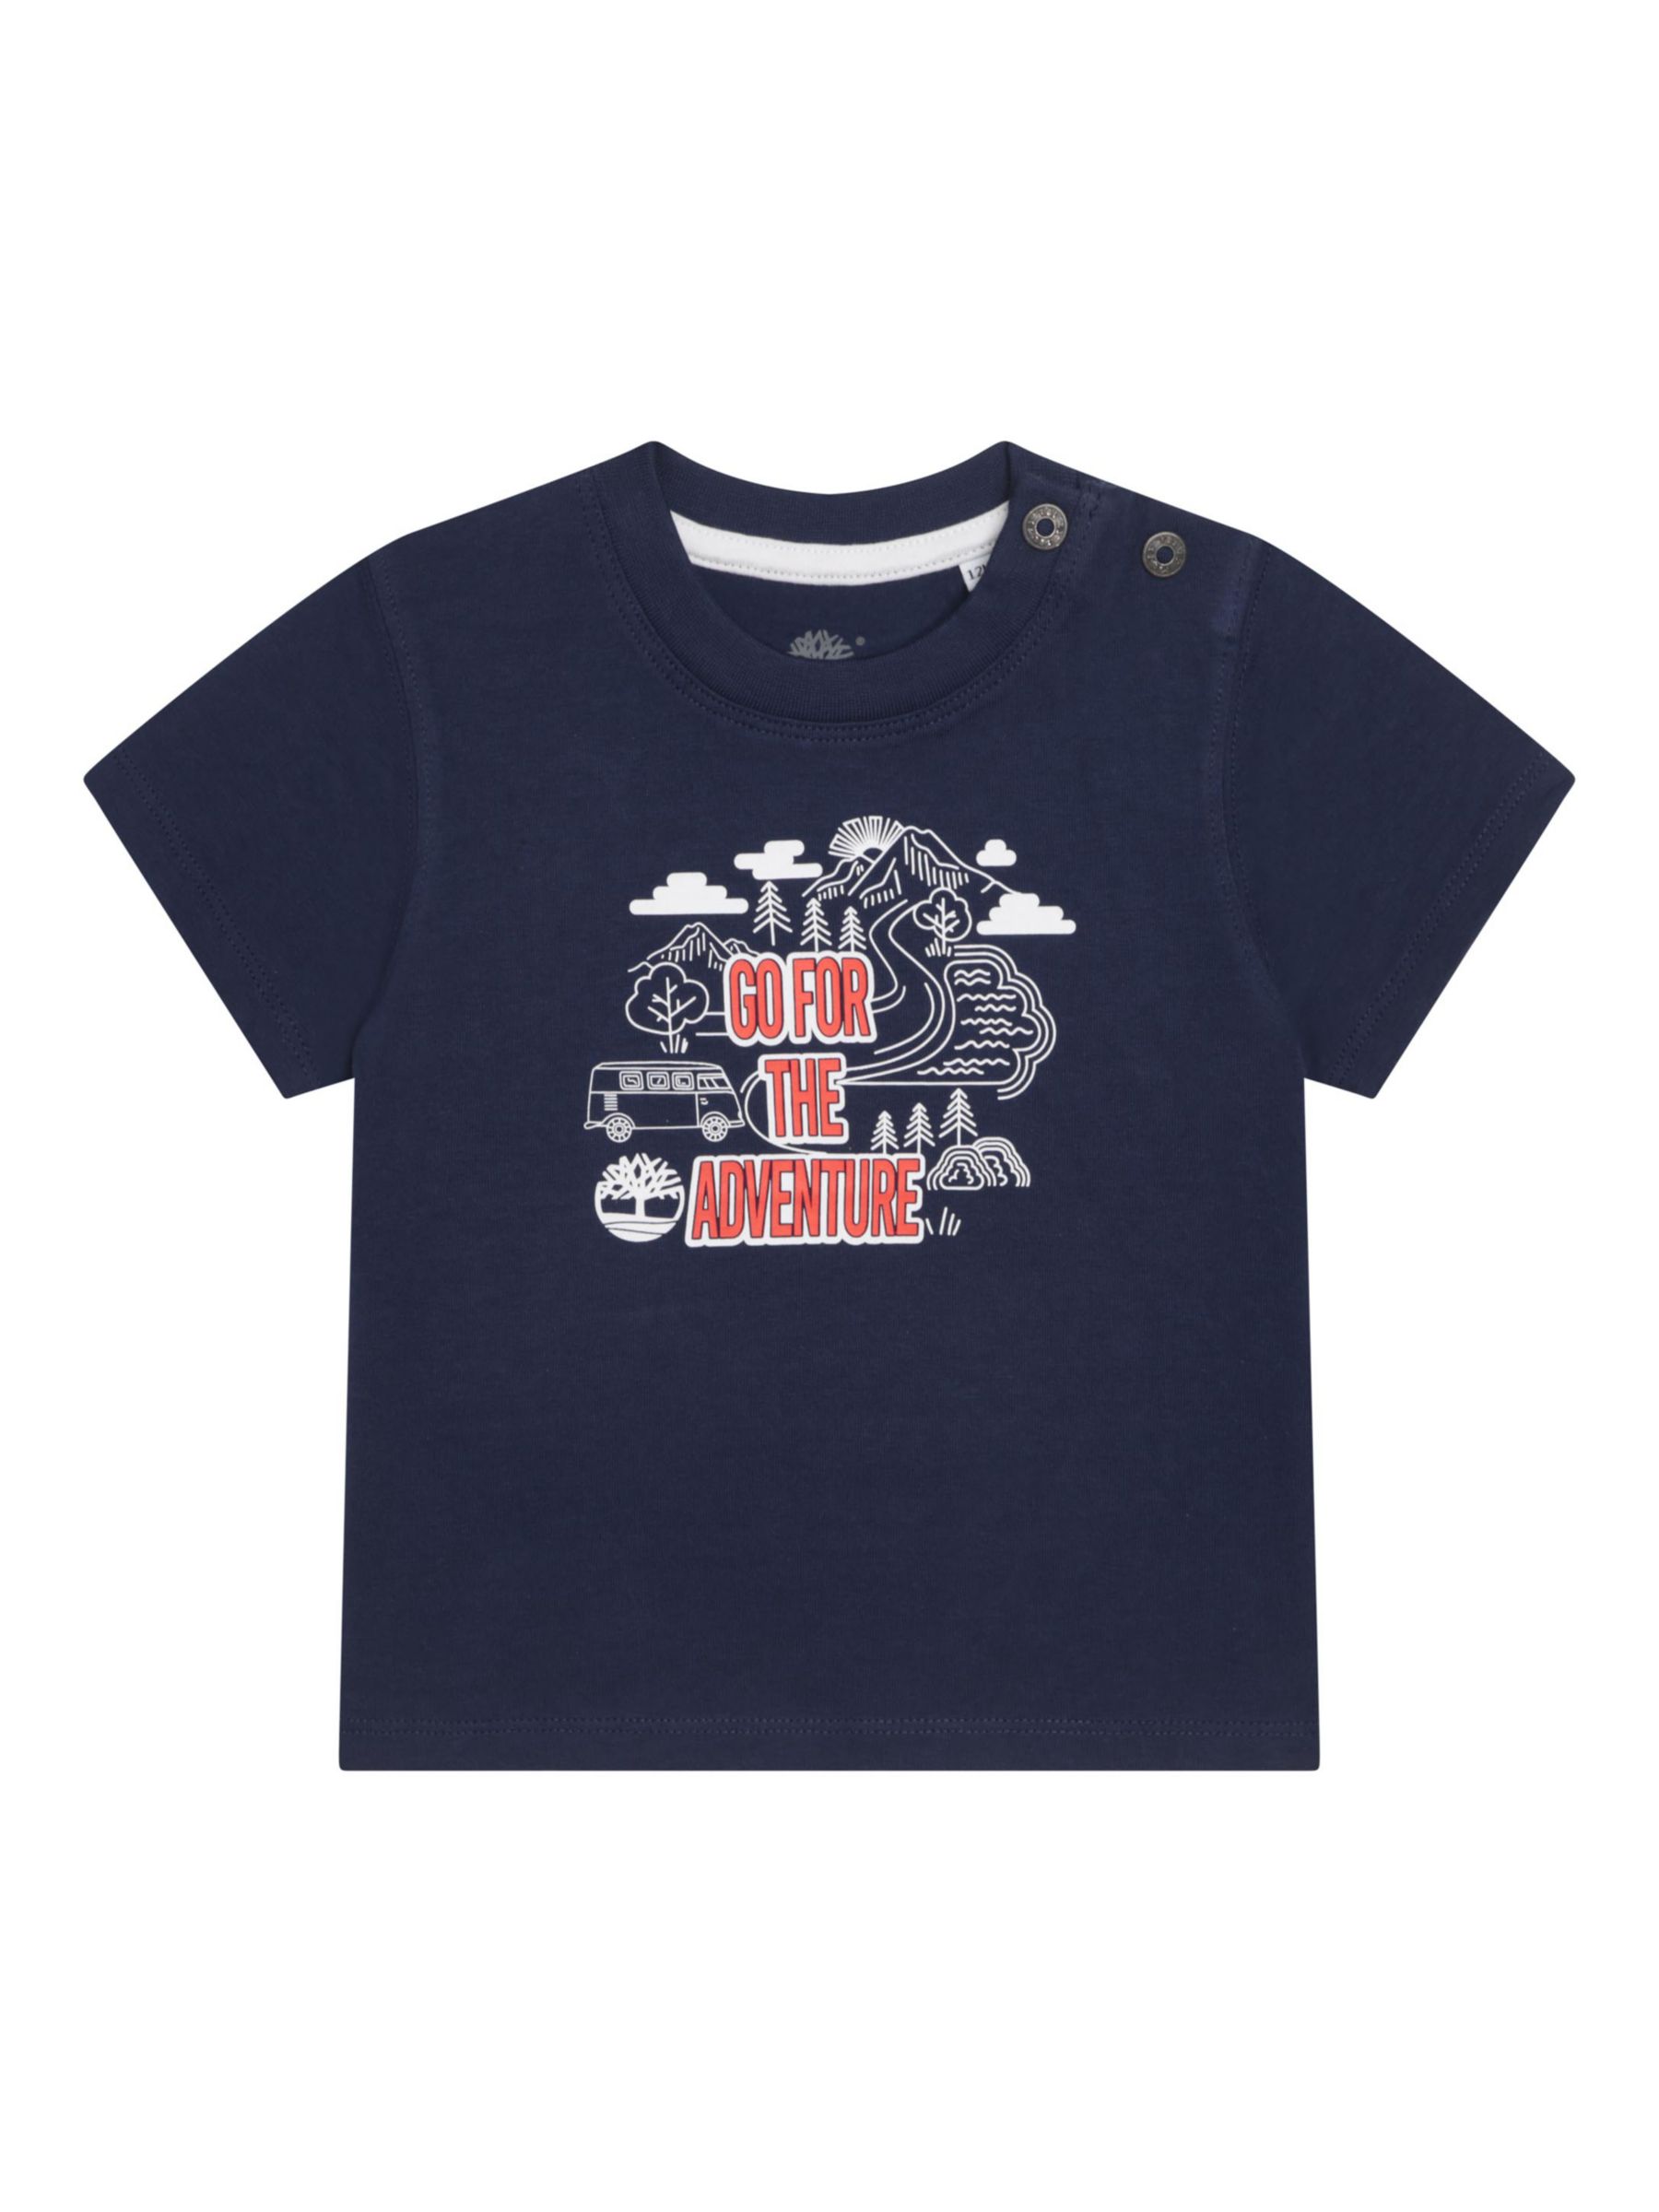 Timberland Kids' Short Sleeved T-Shirt, Navy/Multi, 6 months